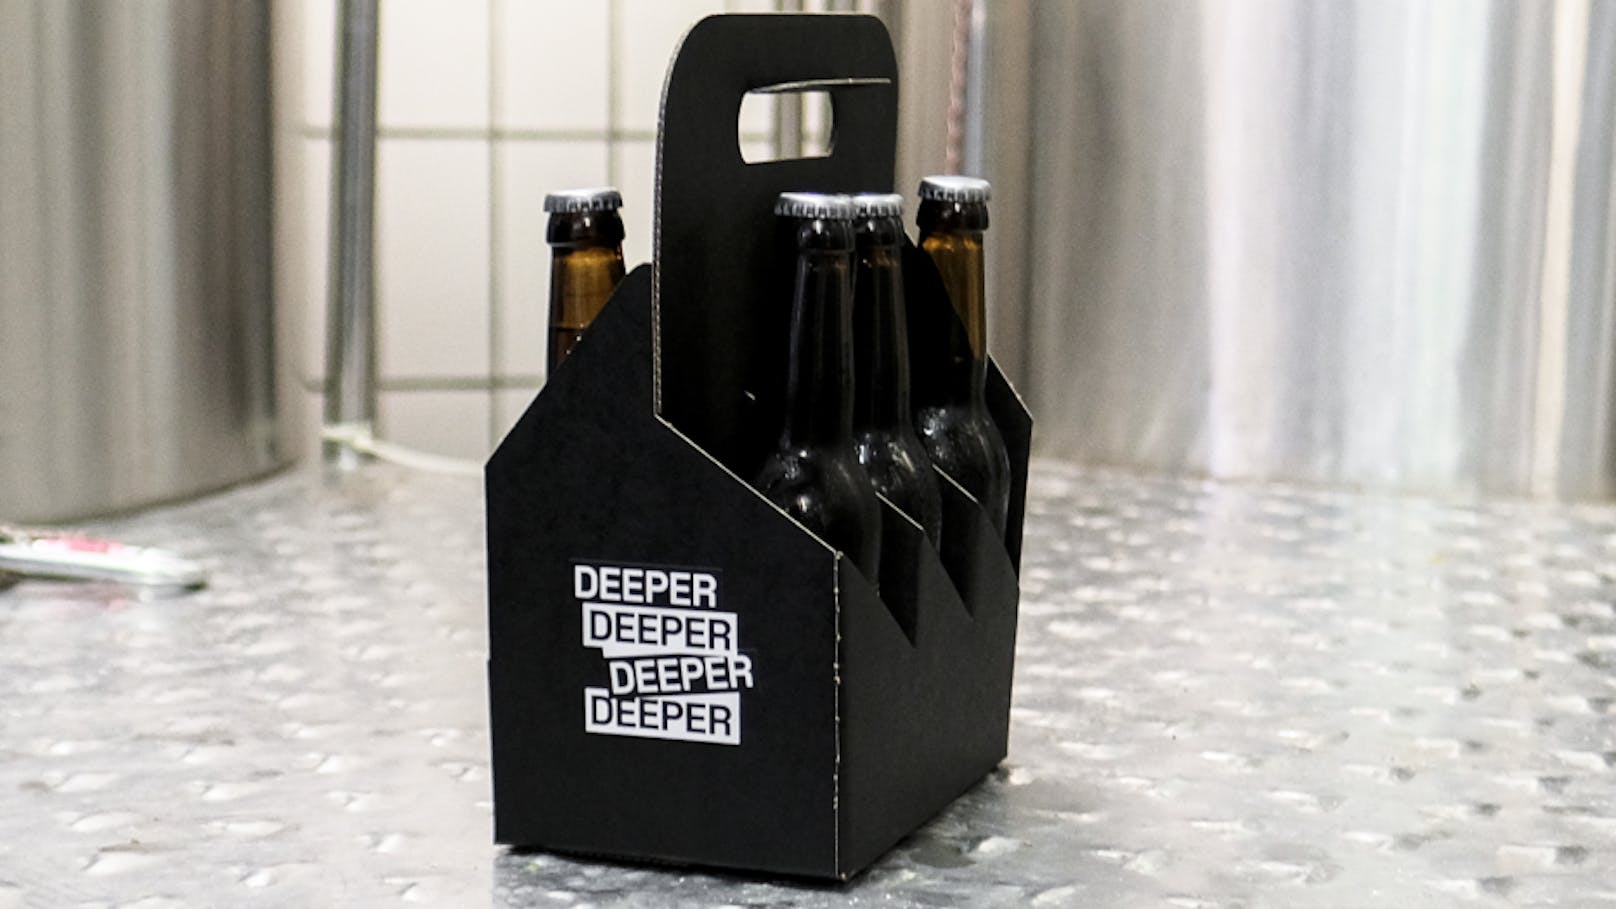 "Deeper" ist das erste Bier, dessen Rezeptur auf AI basiert.